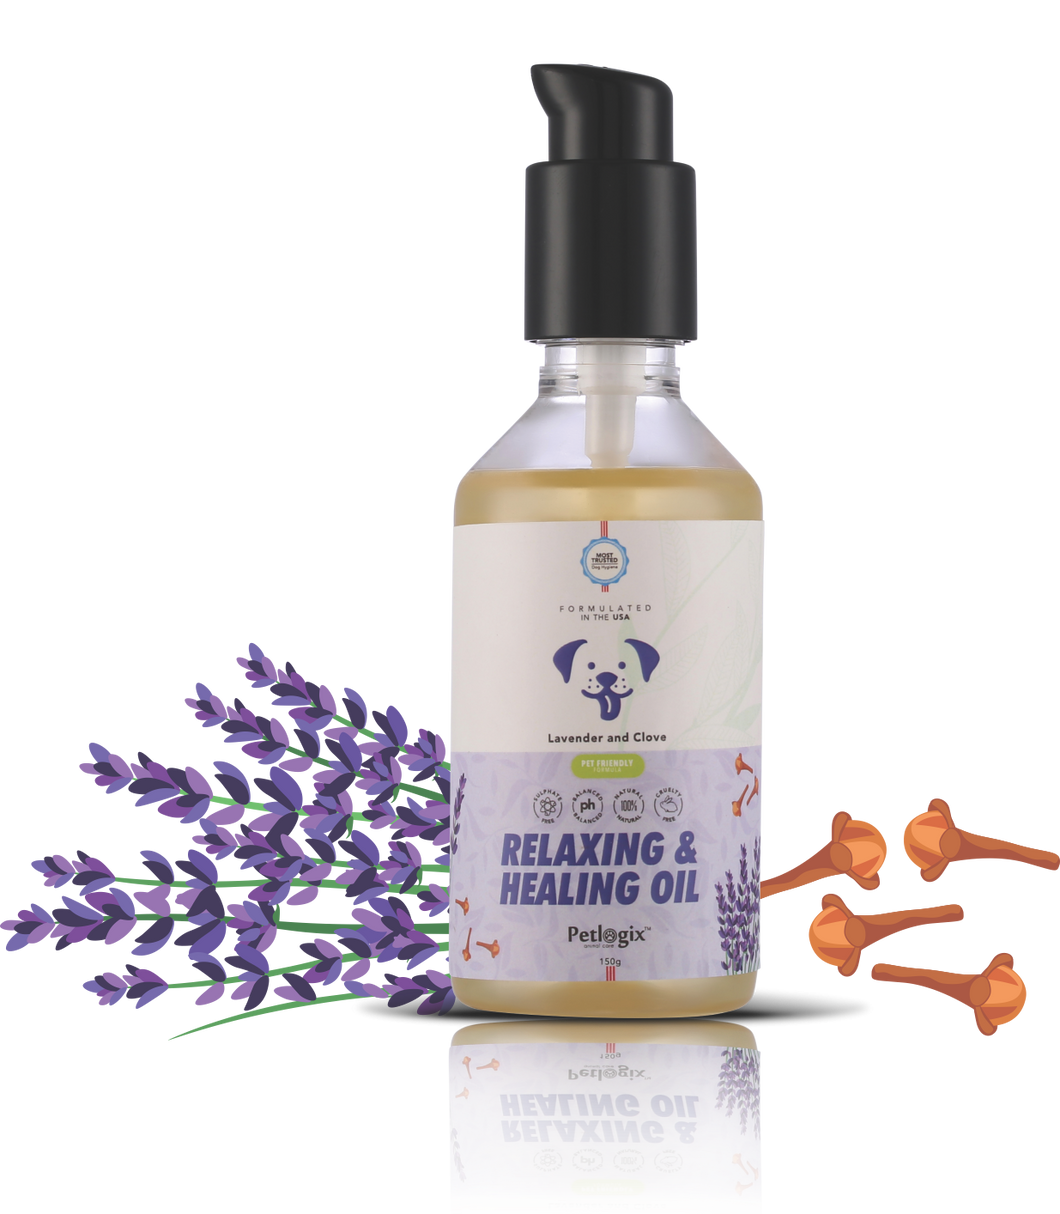 Petlogix Relaxing & Healing Oil - Lavender & Clove